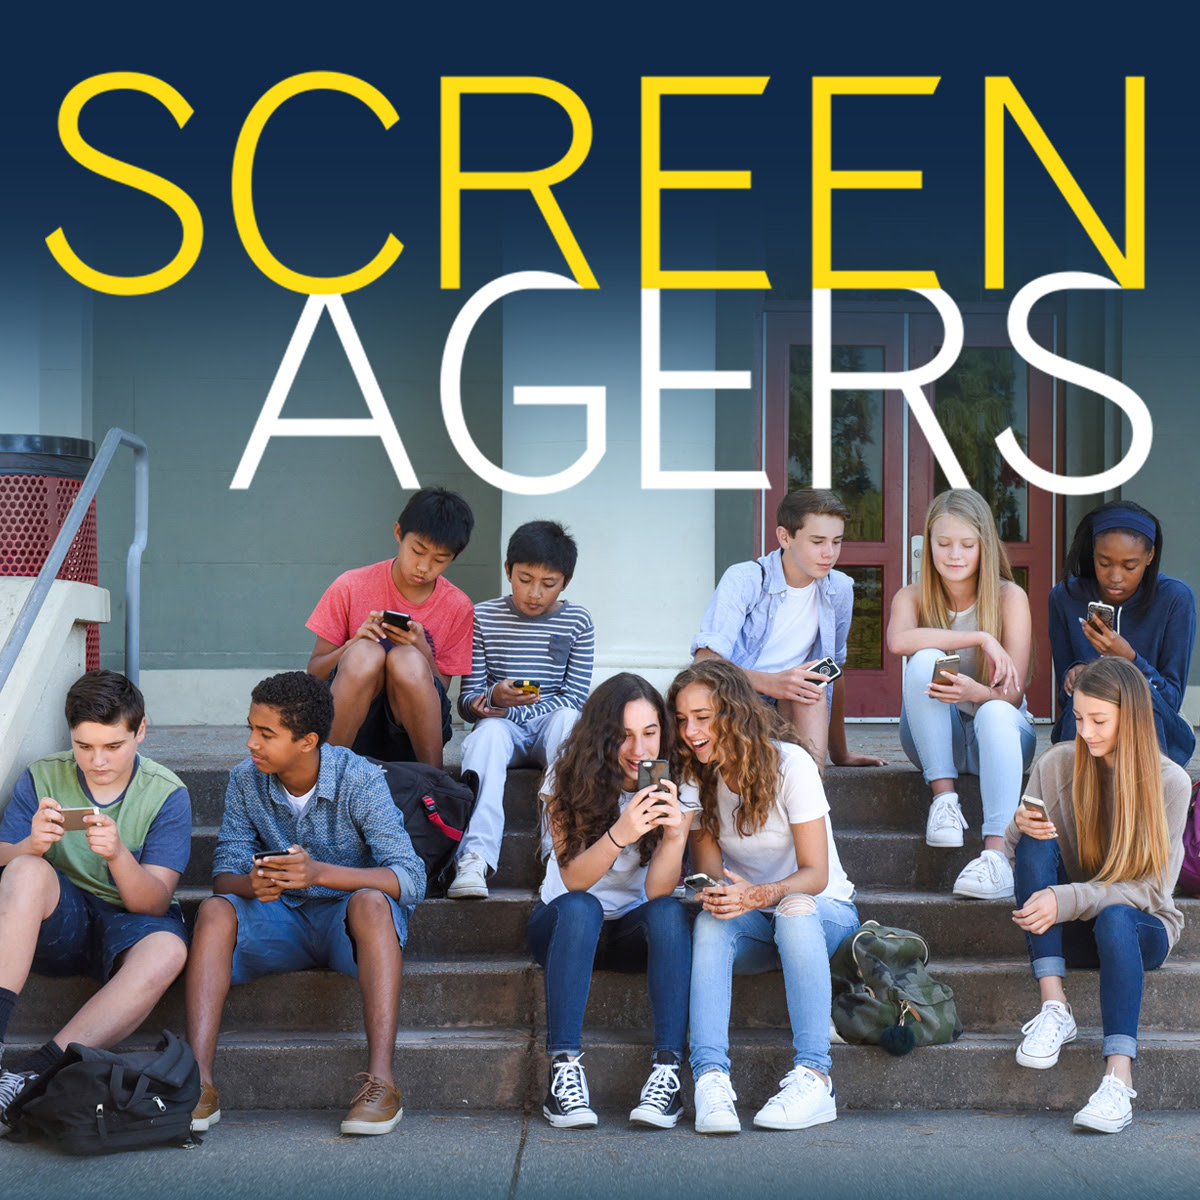 Screenagers Film Presented By Bernardo Heights Middle School